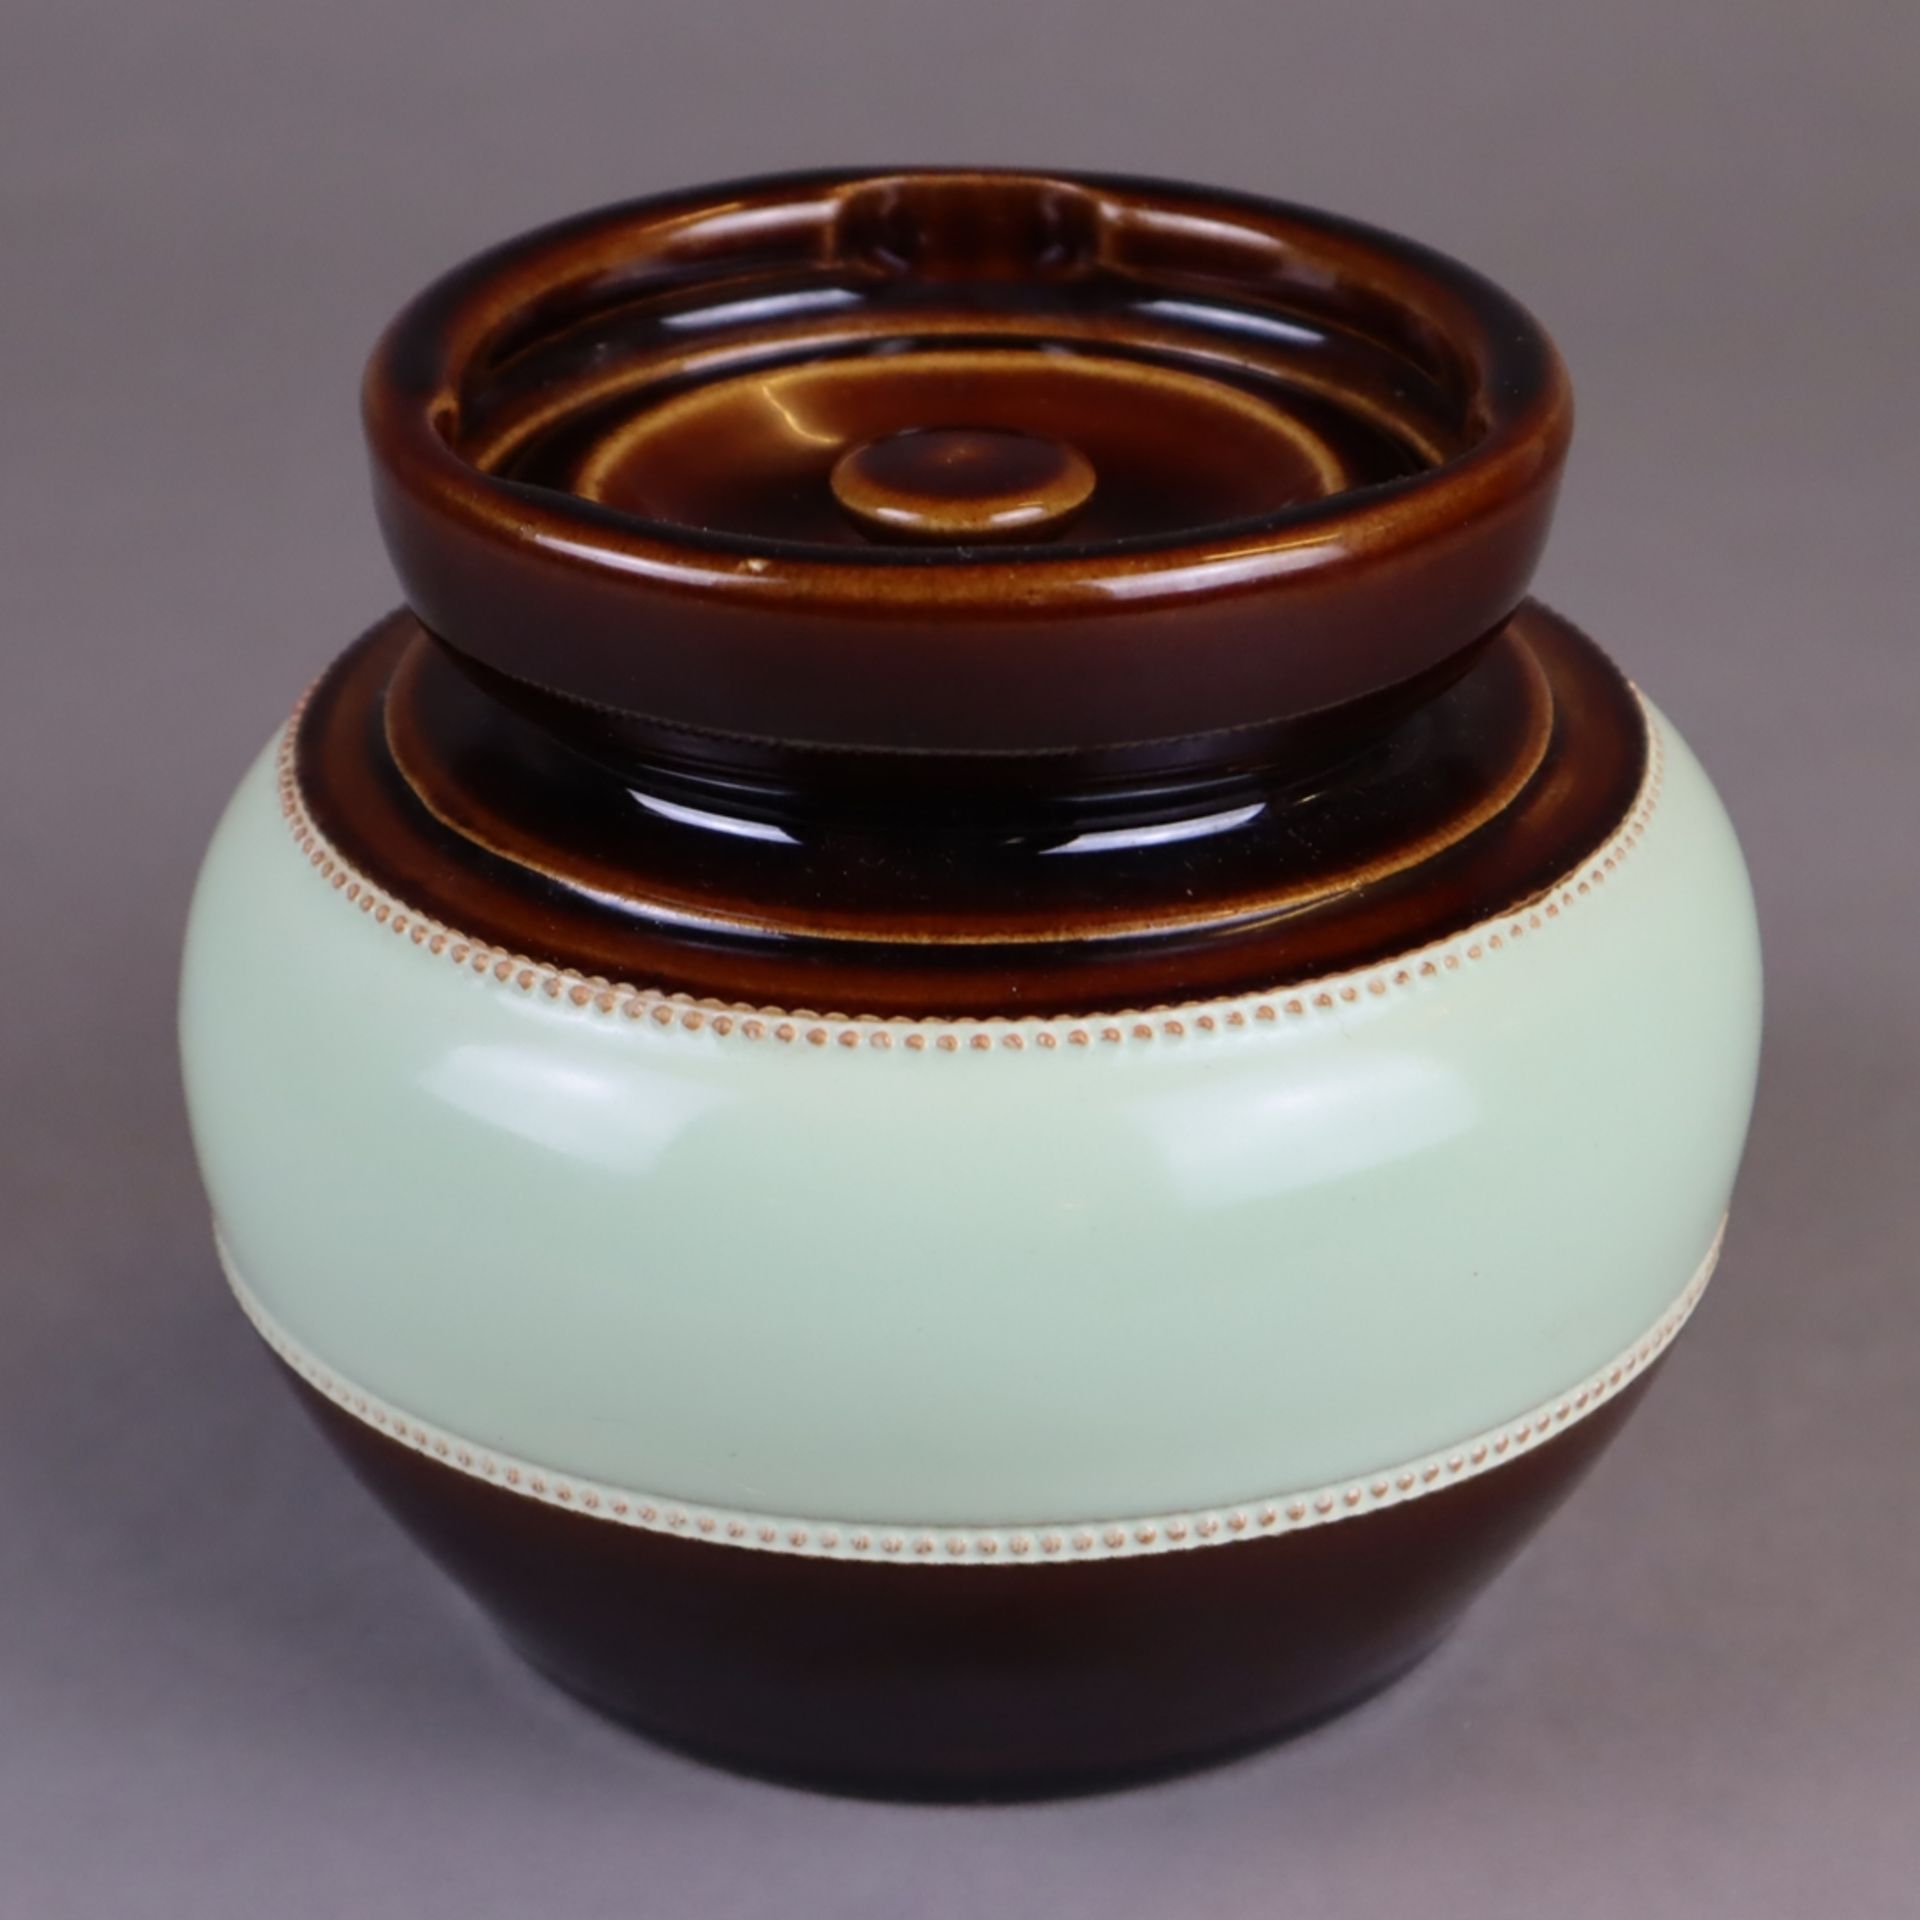 Keramik-Tabaktopf - sandfarbener Scherben, Glasur in Braun und Lindgrün, gebauchte Wandung auf zurü